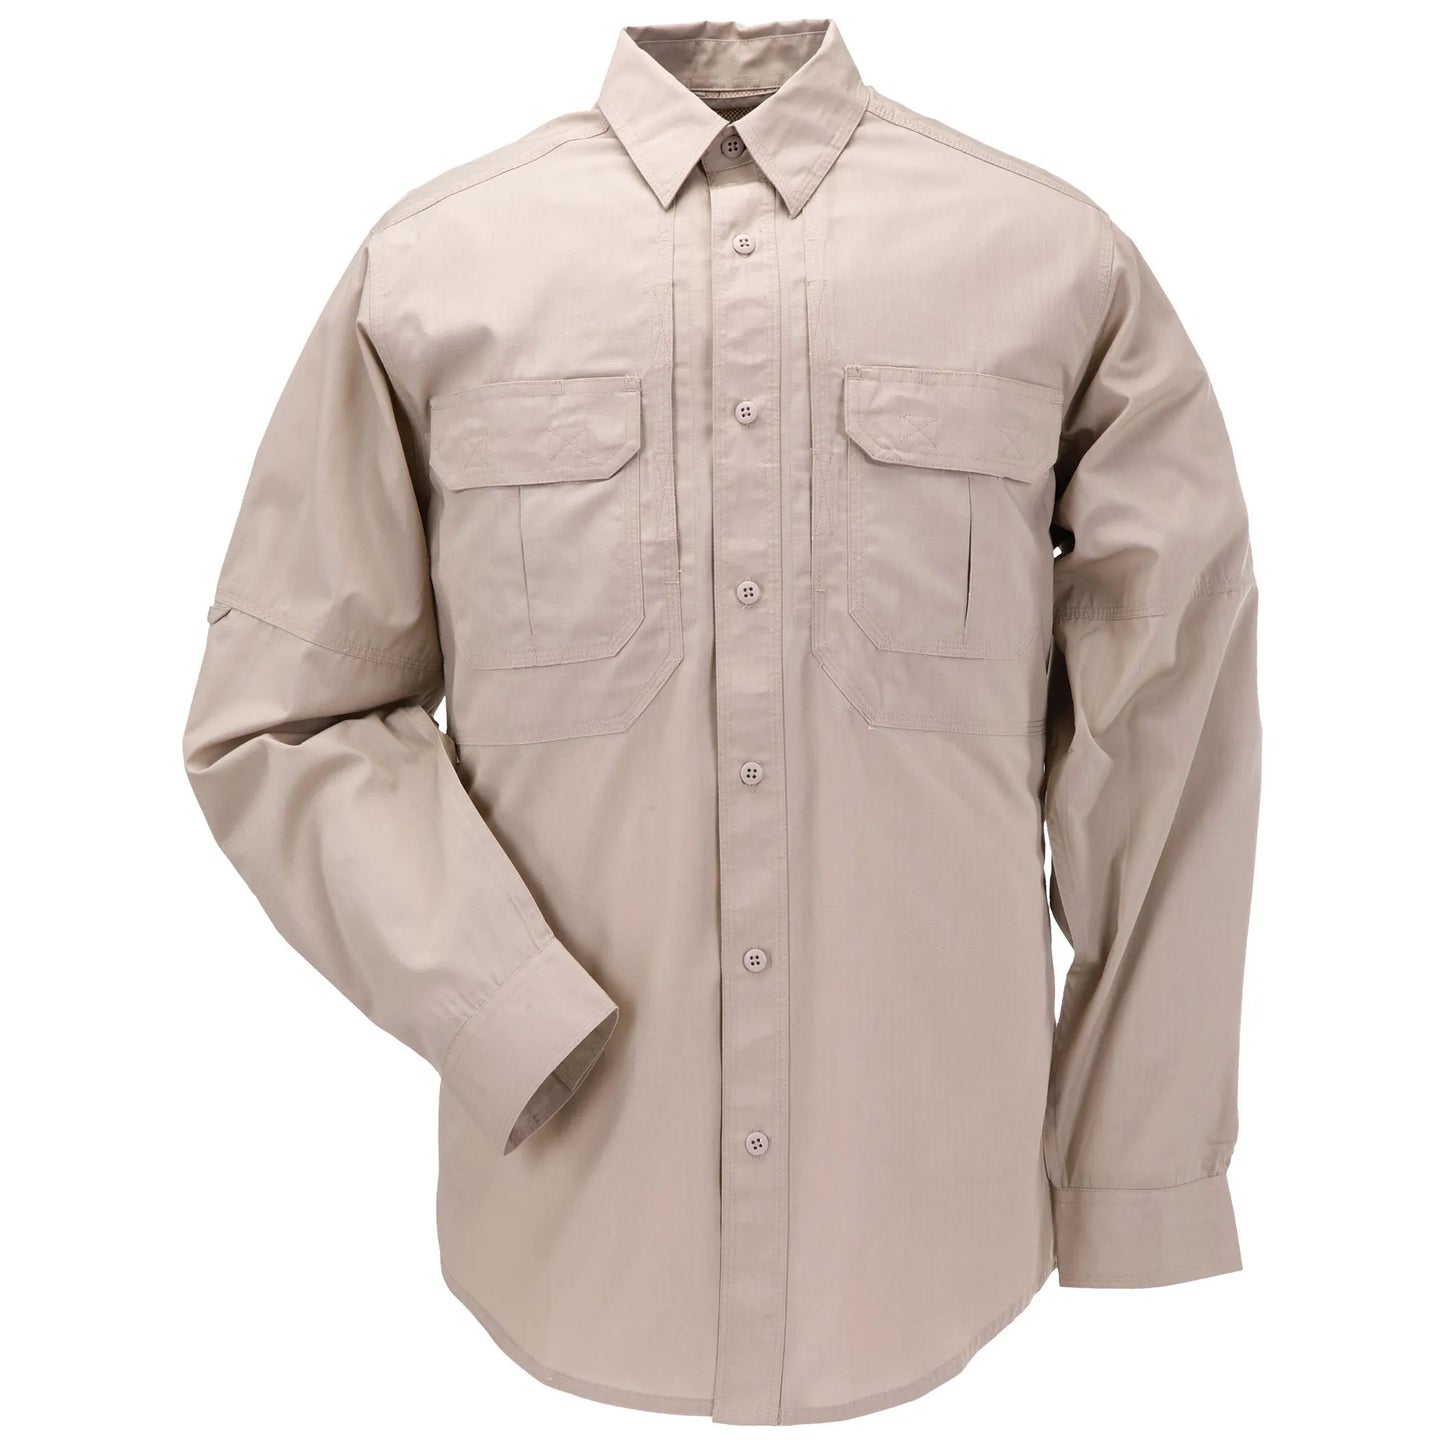 5.11 Tactical Taclite Pro Long Sleeve Shirt-Tac Essentials